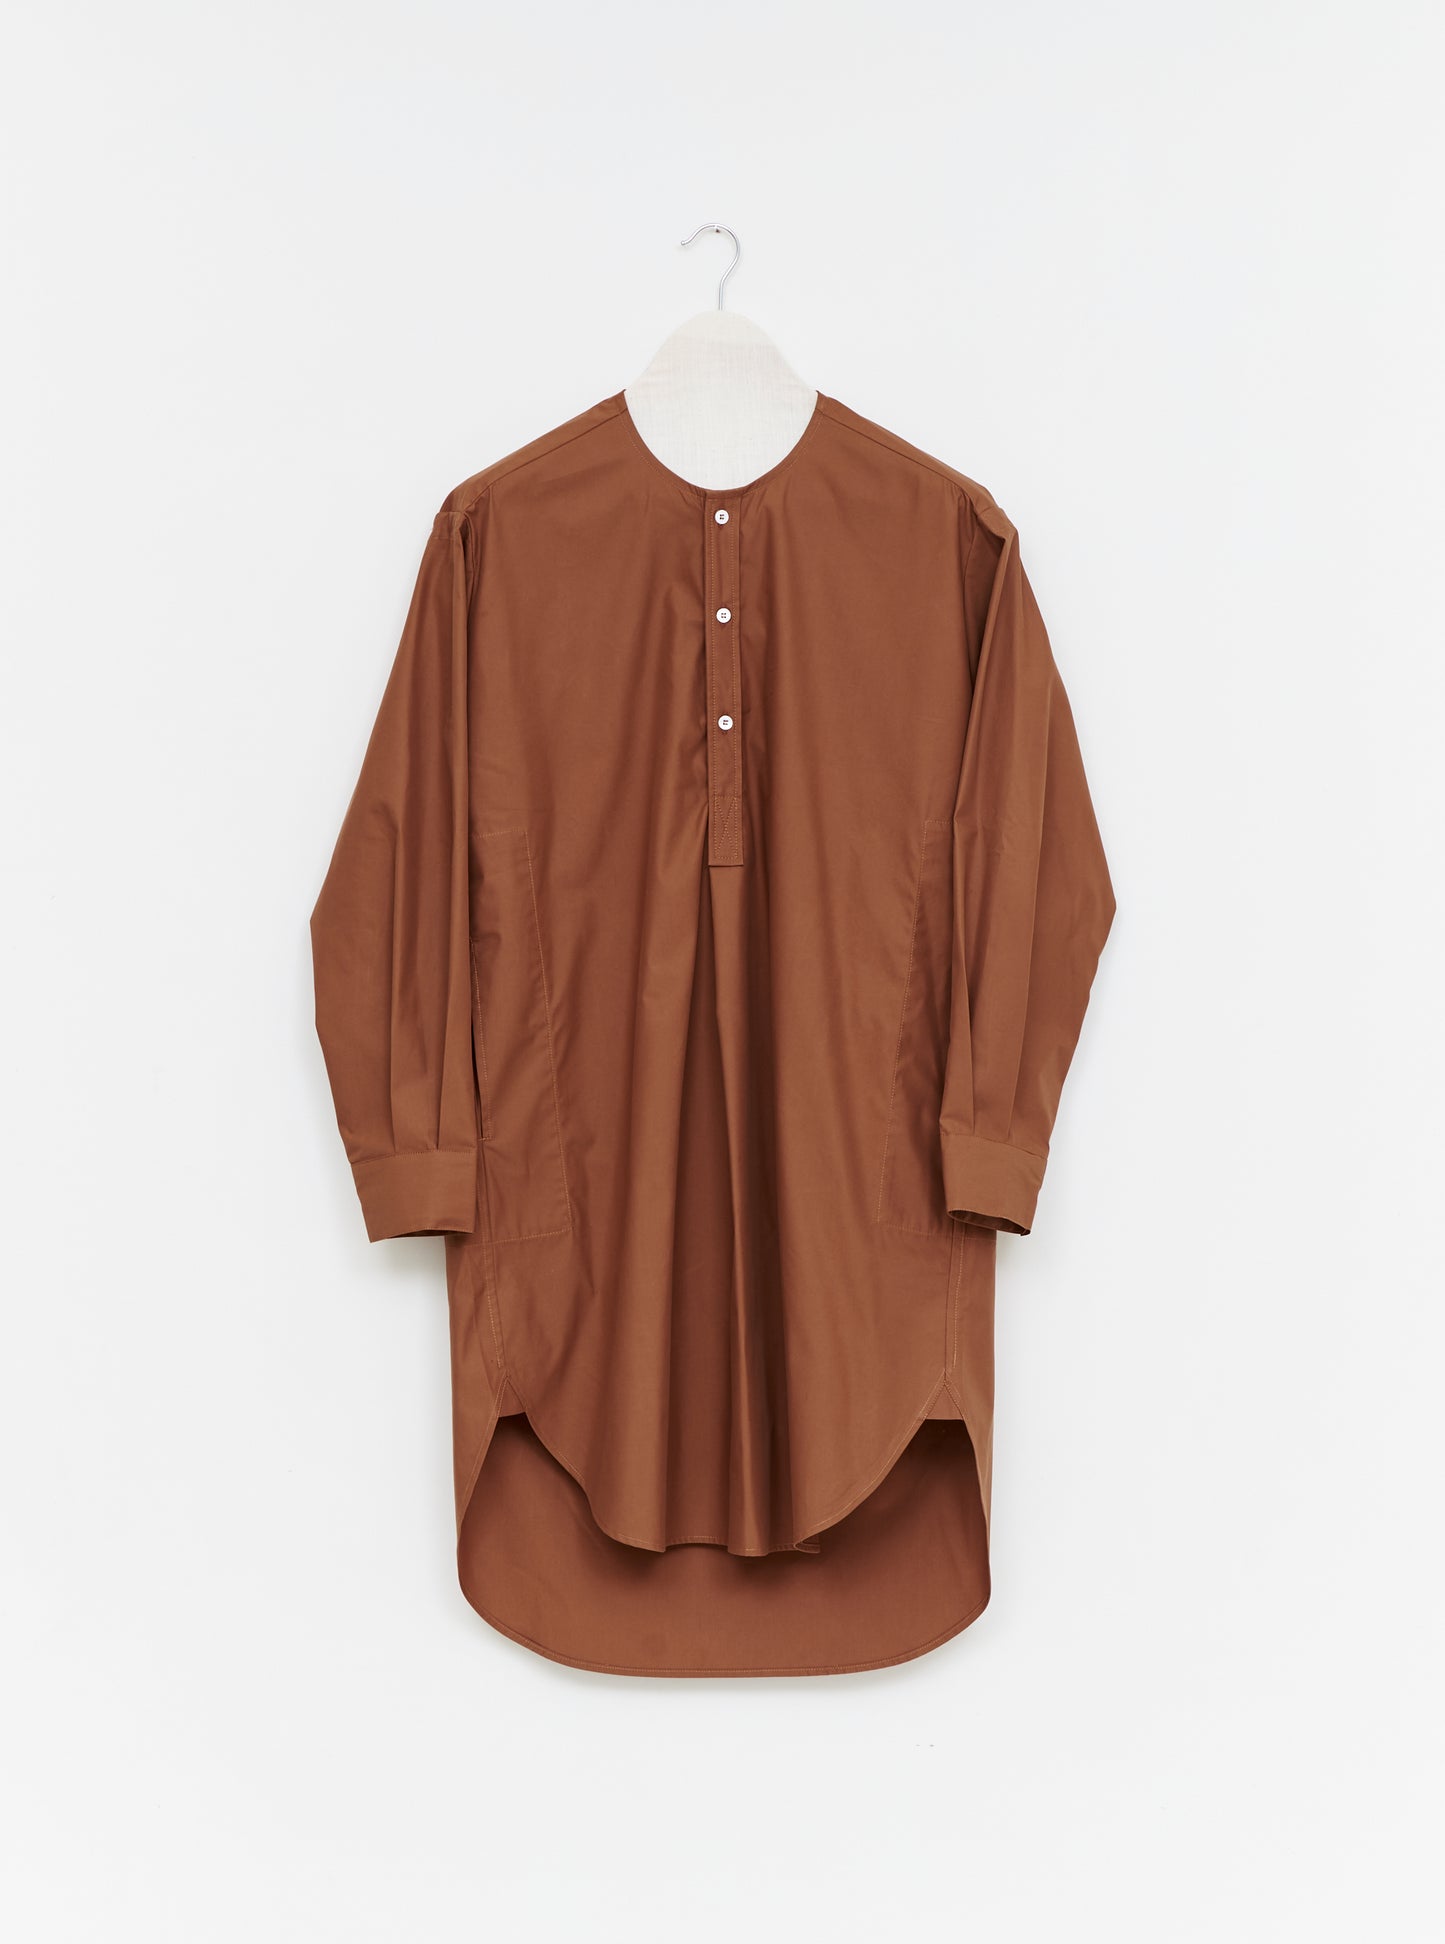 Palomar Shirt - Ochre Cotton